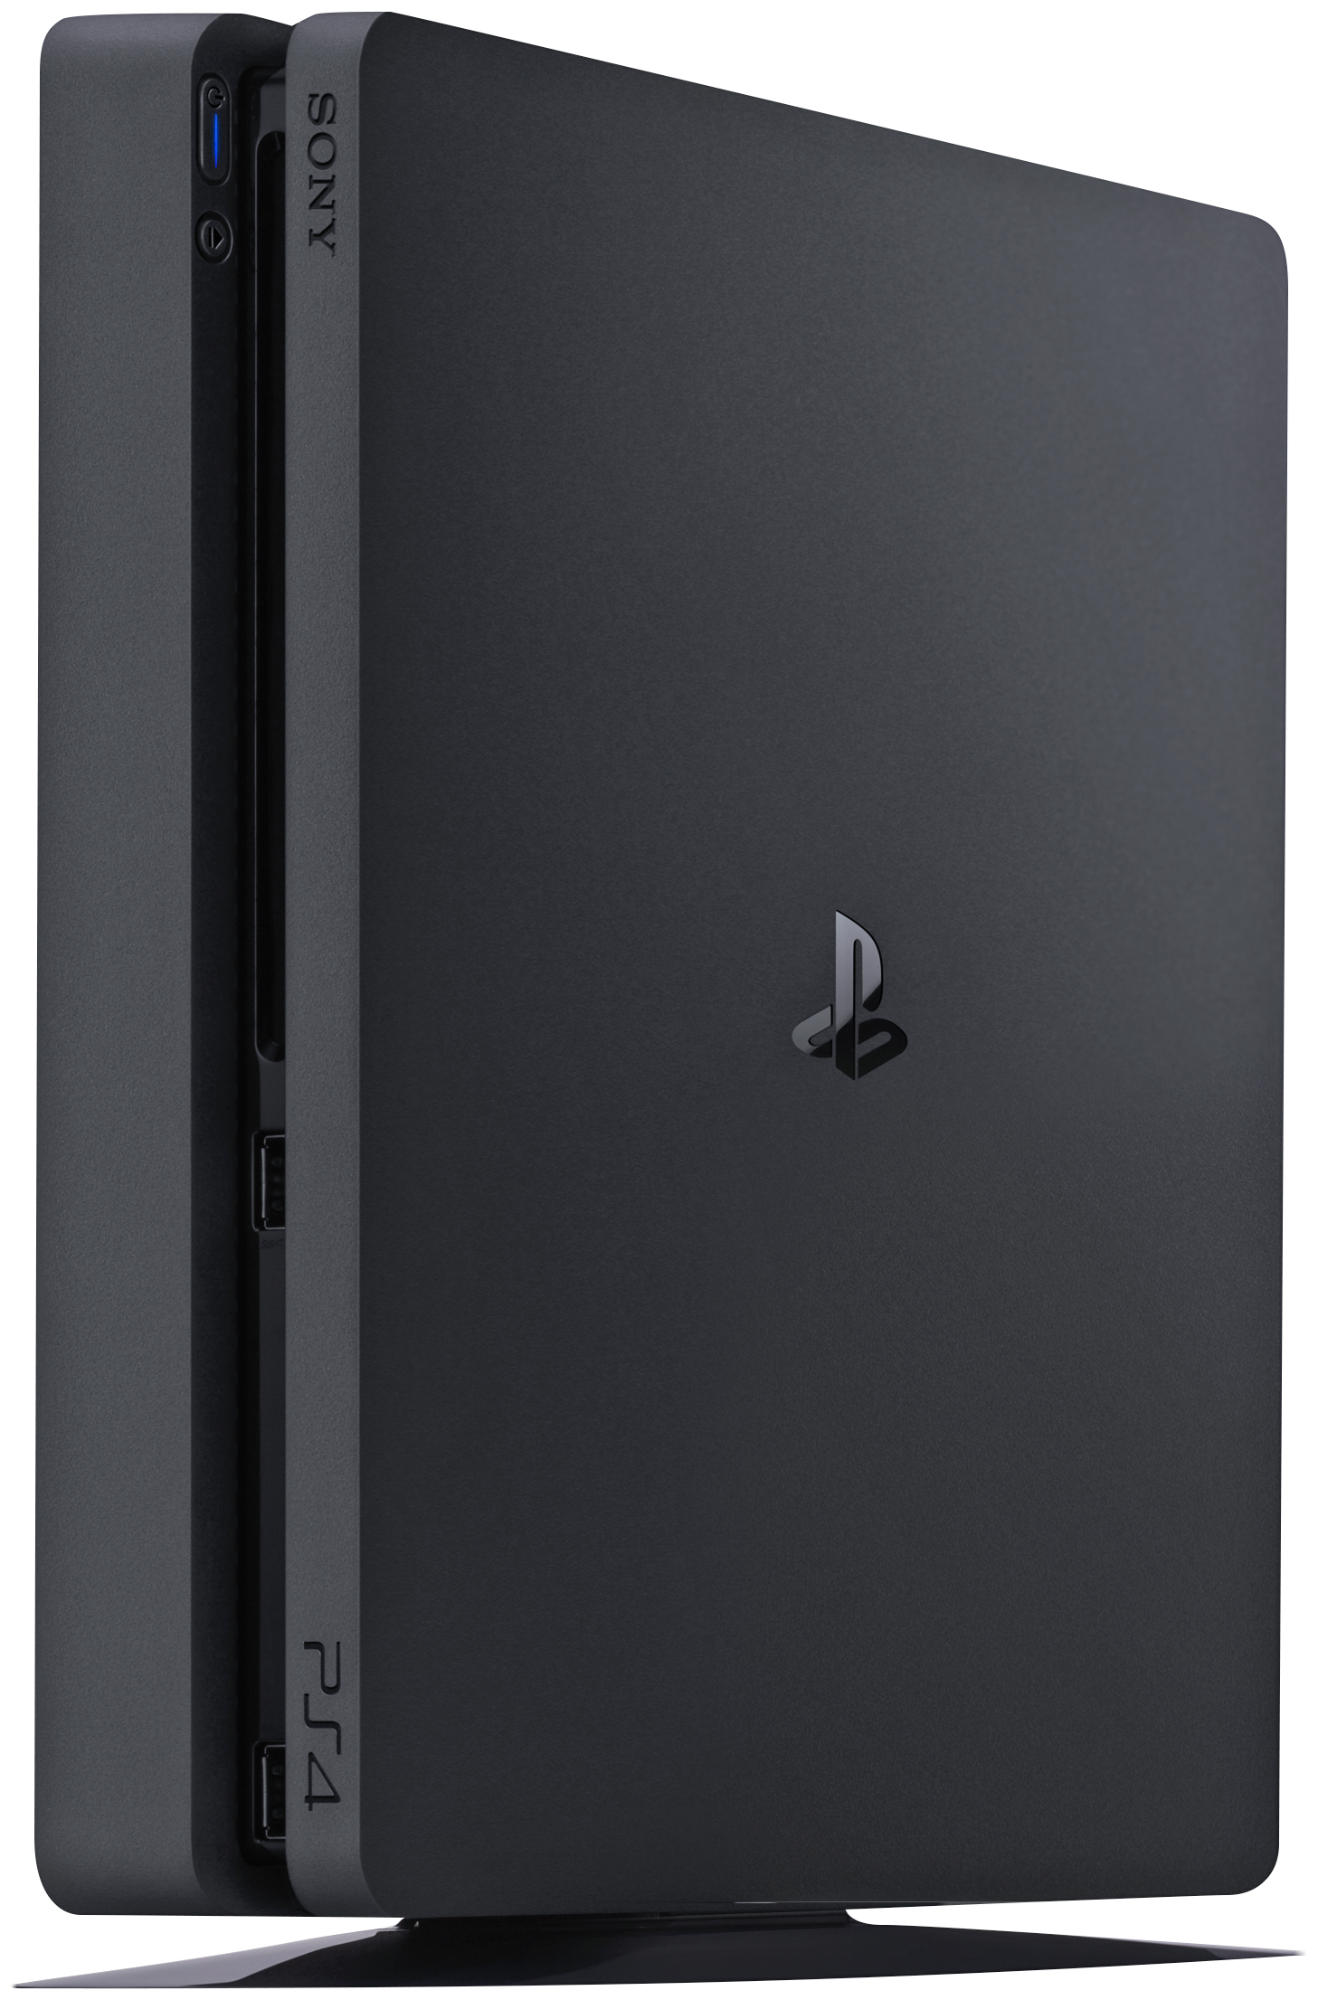 SONY 500GB Slim PlayStation 4